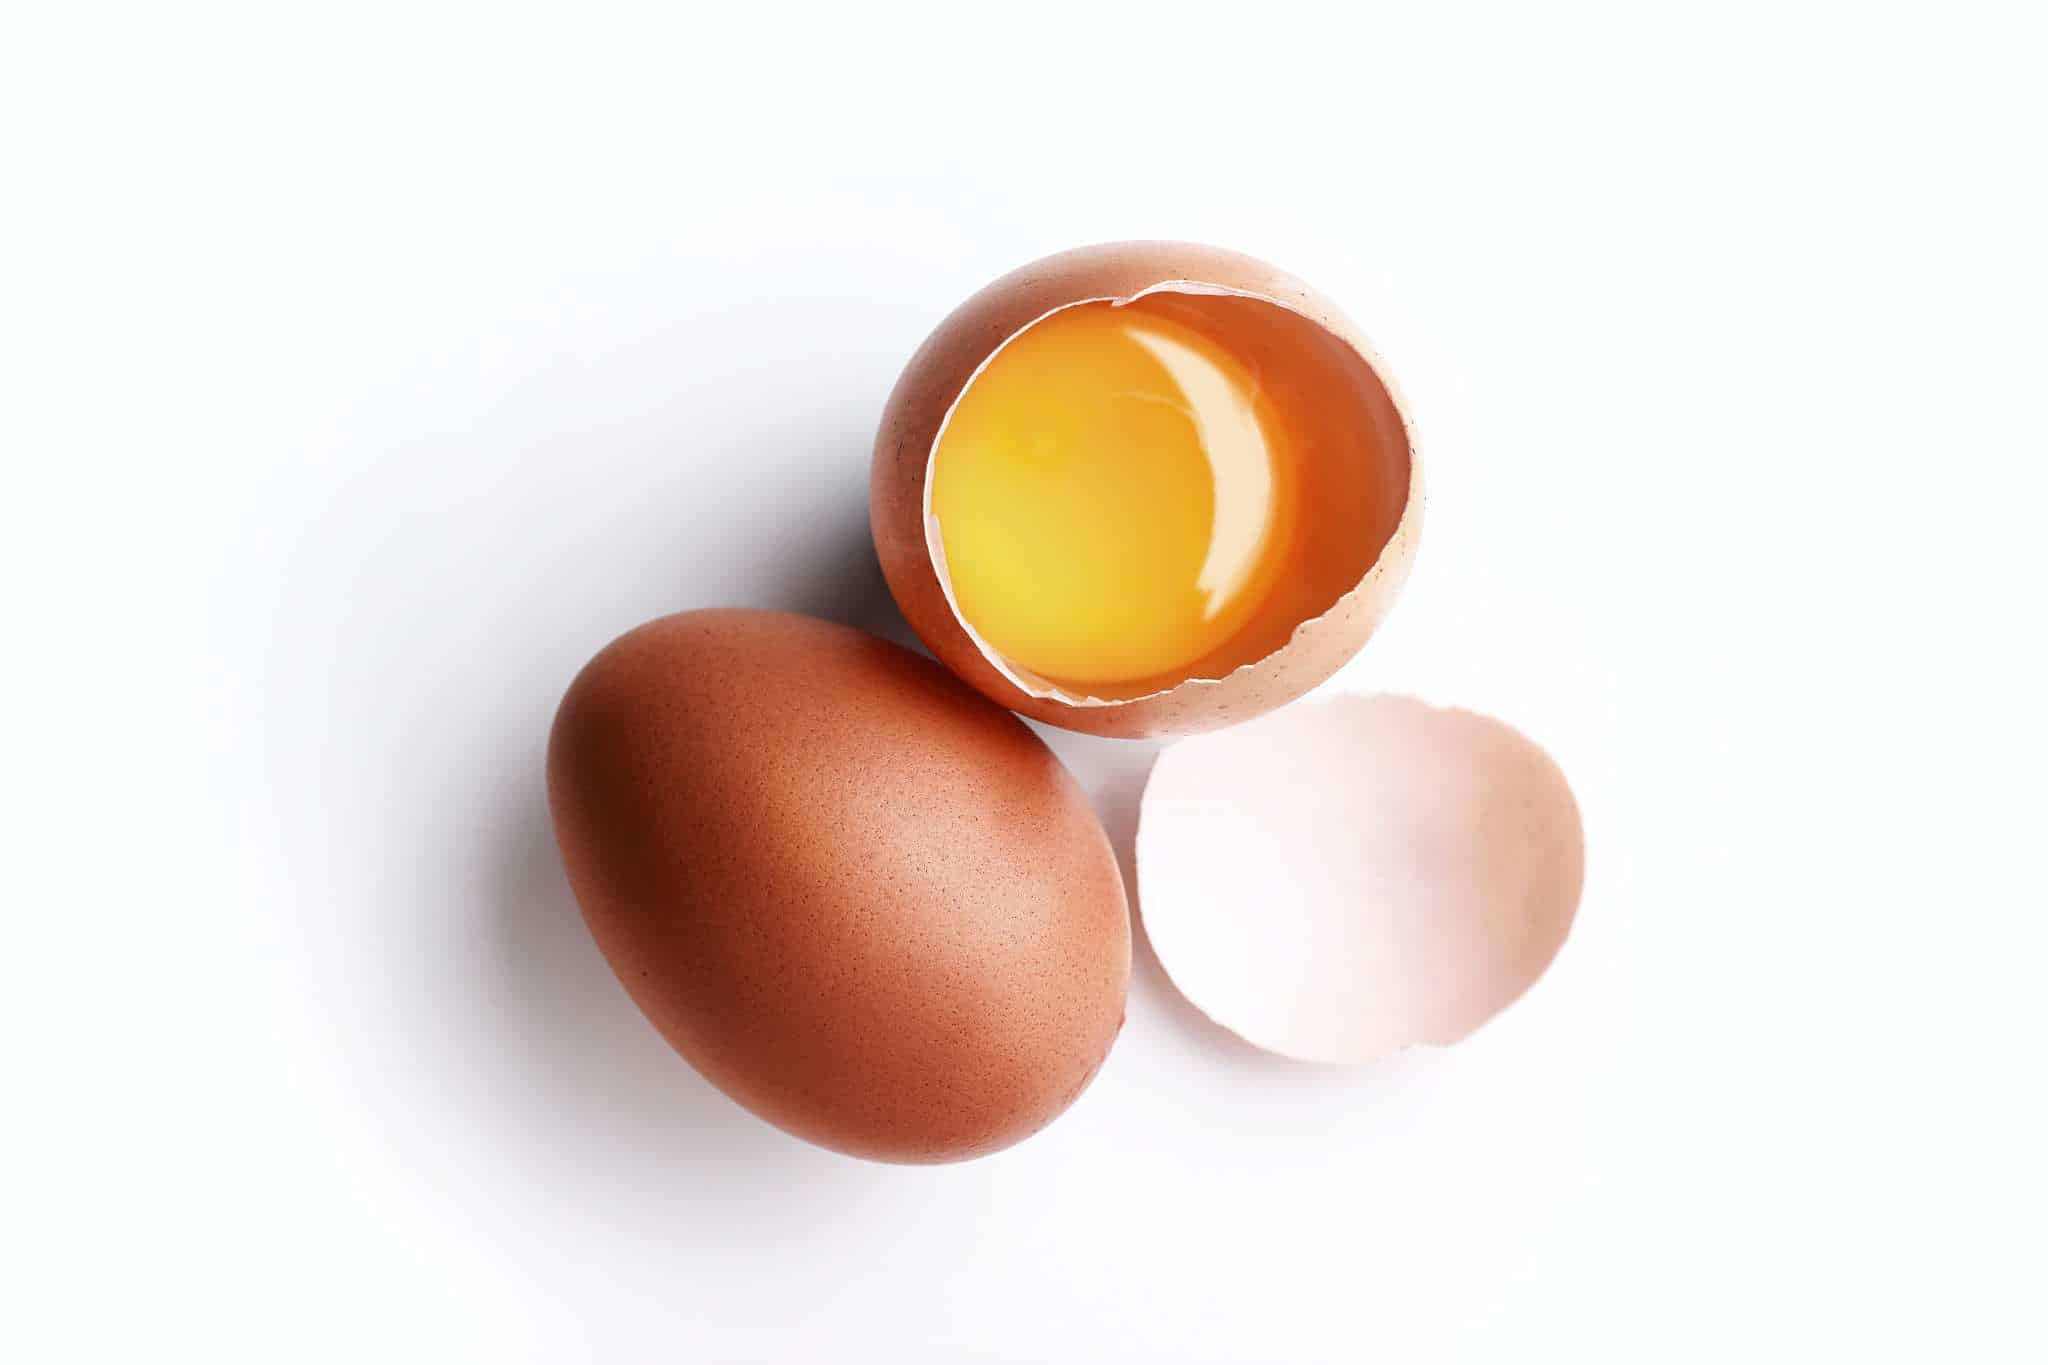 consumo di uova e patologie cardiovascolari